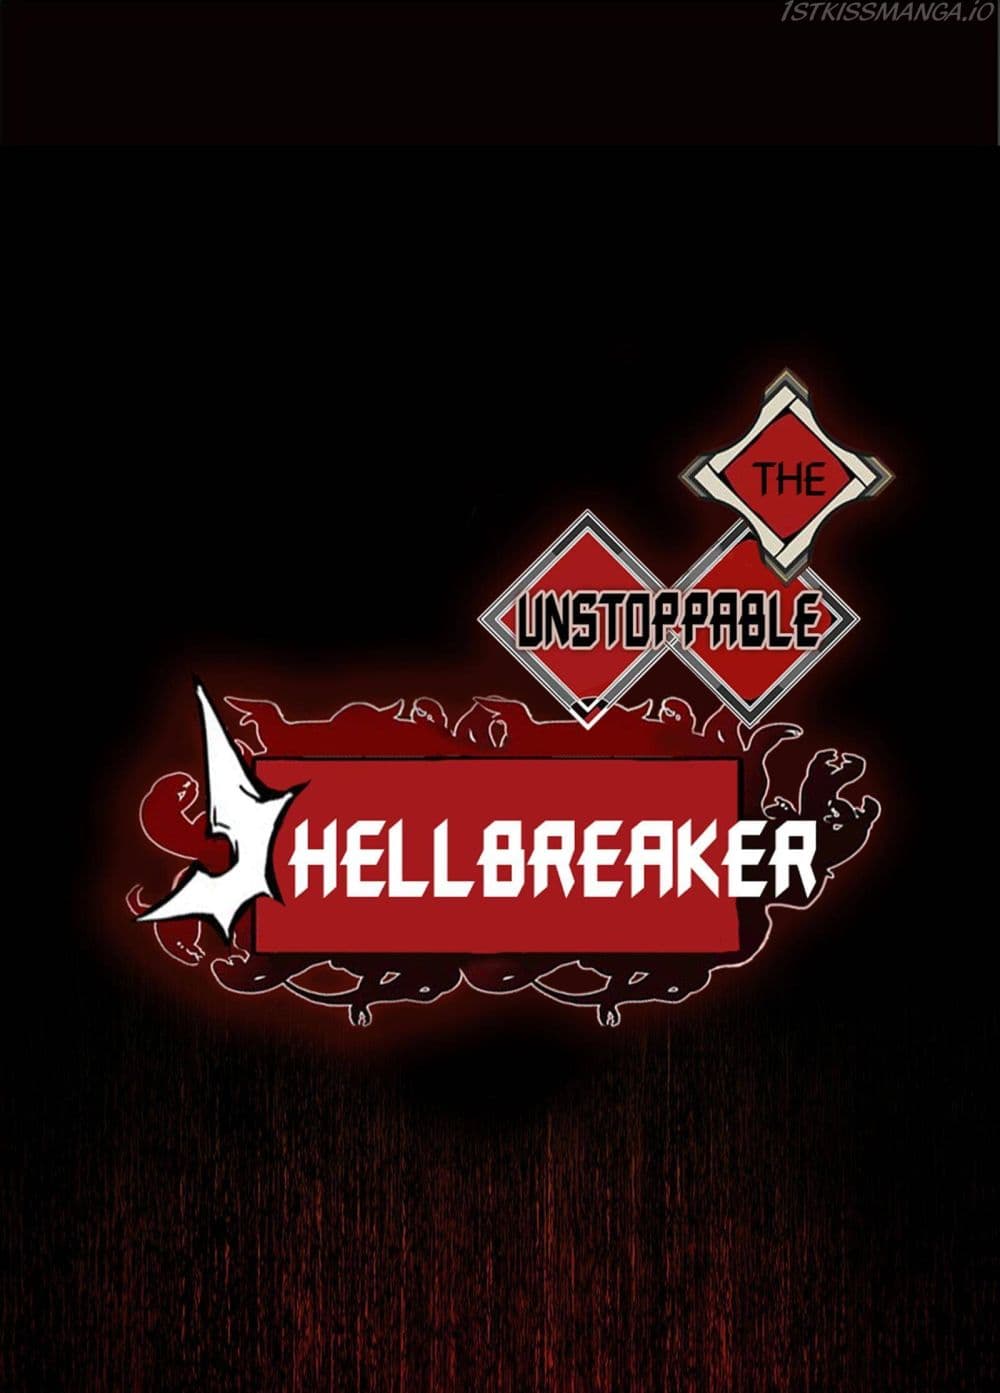 The Unstoppable Hellbreaker 16-16